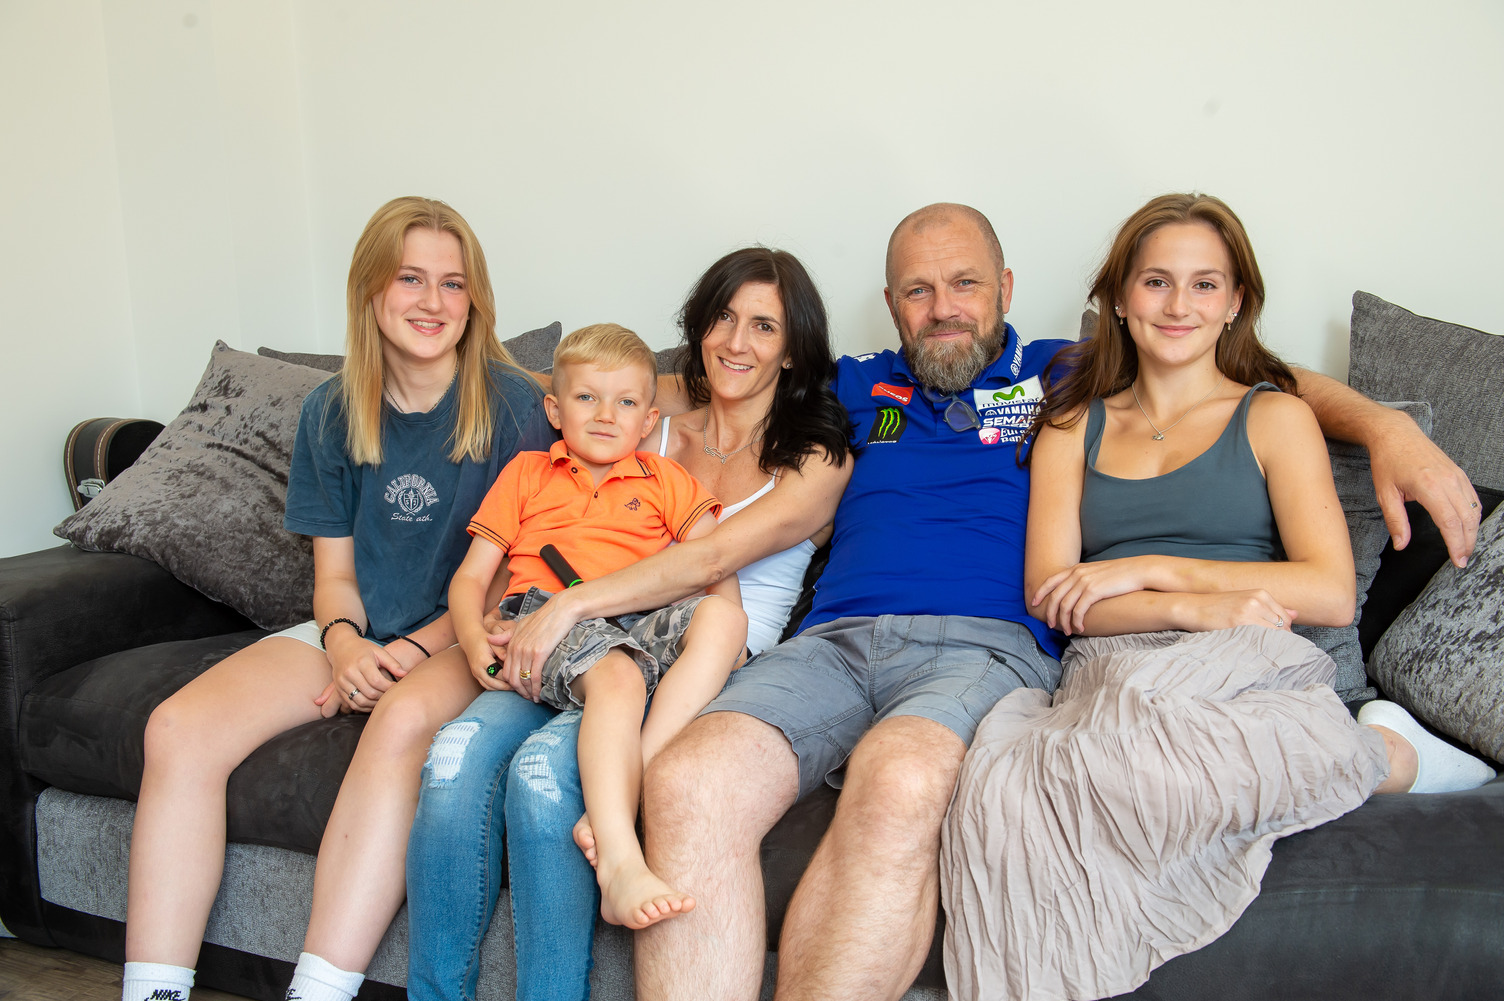 Family get back on property ladder in Saffron Walden after years of setbacks